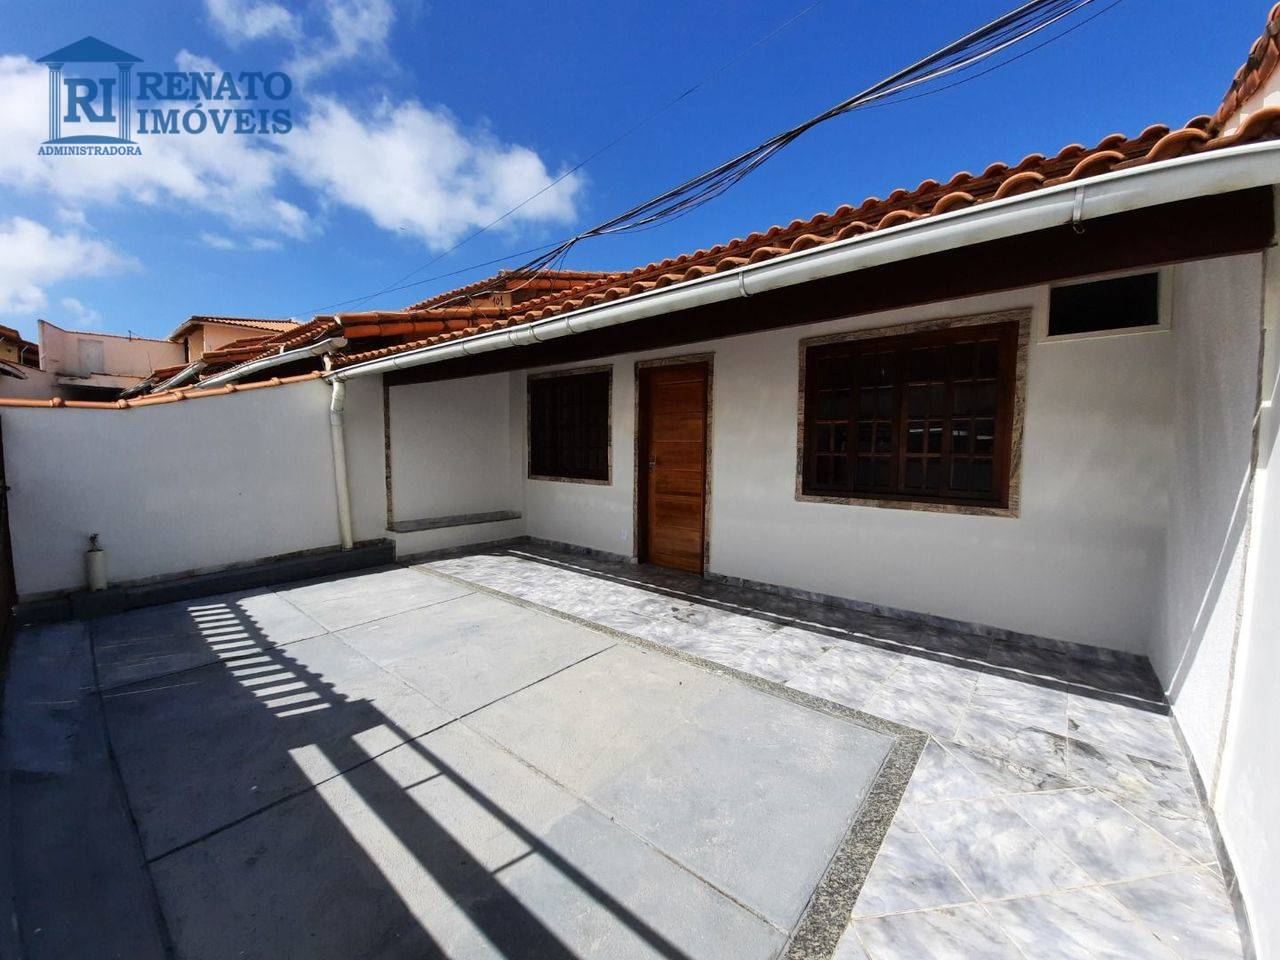 Casa com 2 dormitórios para alugar por R$ 1.100,00/mês - Mumbuca - Maricá/RJ